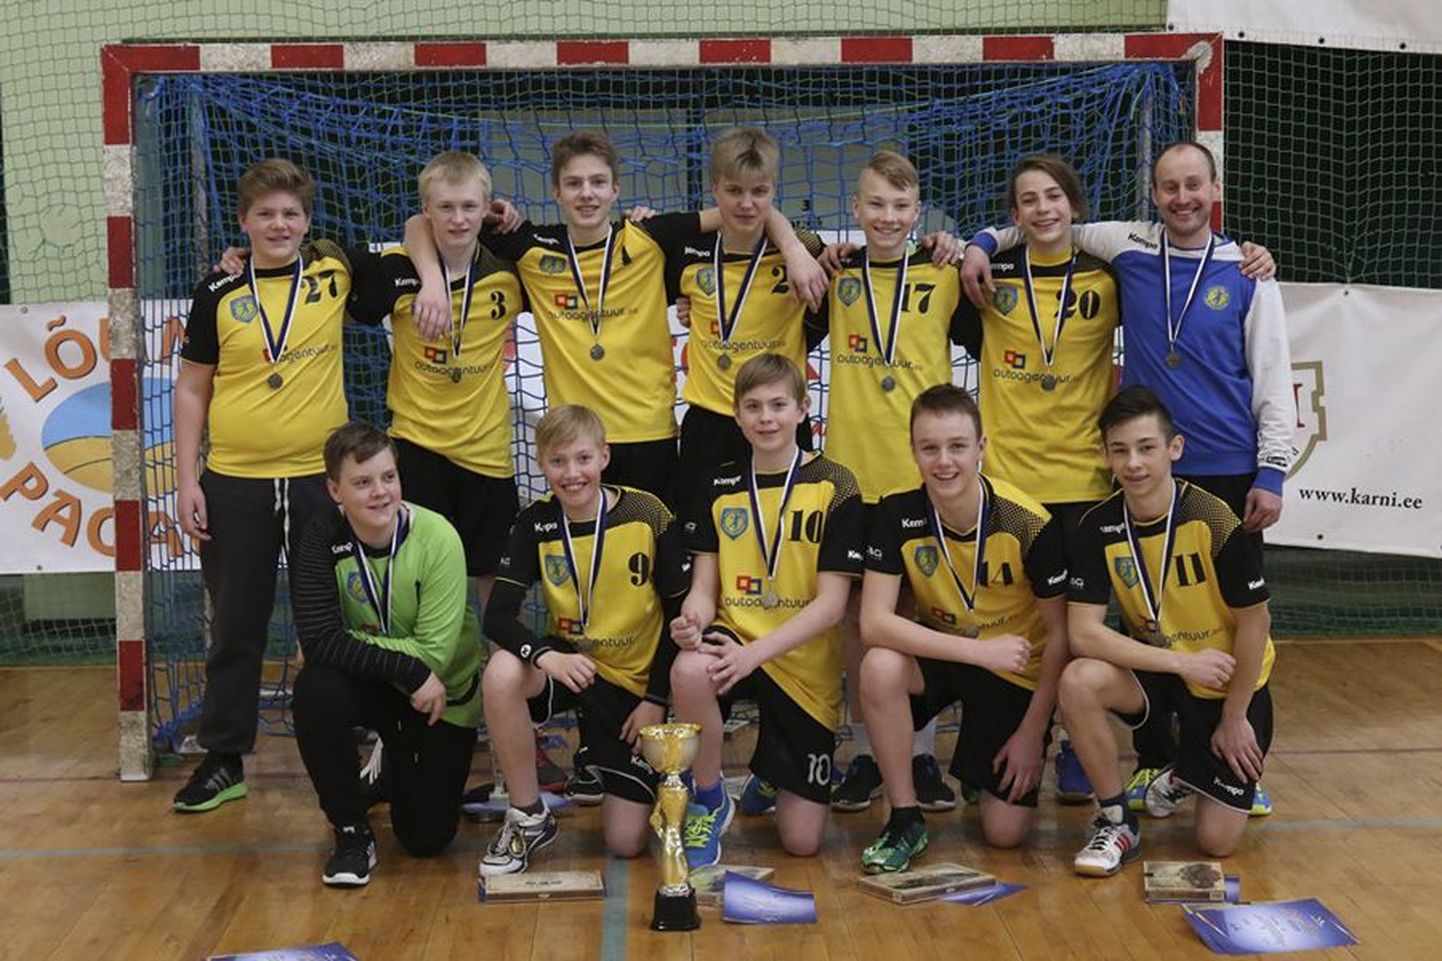 Viljandi 2002. aastal ja hiljem sündinud noormeeste käsipallimeeskond võitis Eesti meistrivõistlustel hõbemedali.